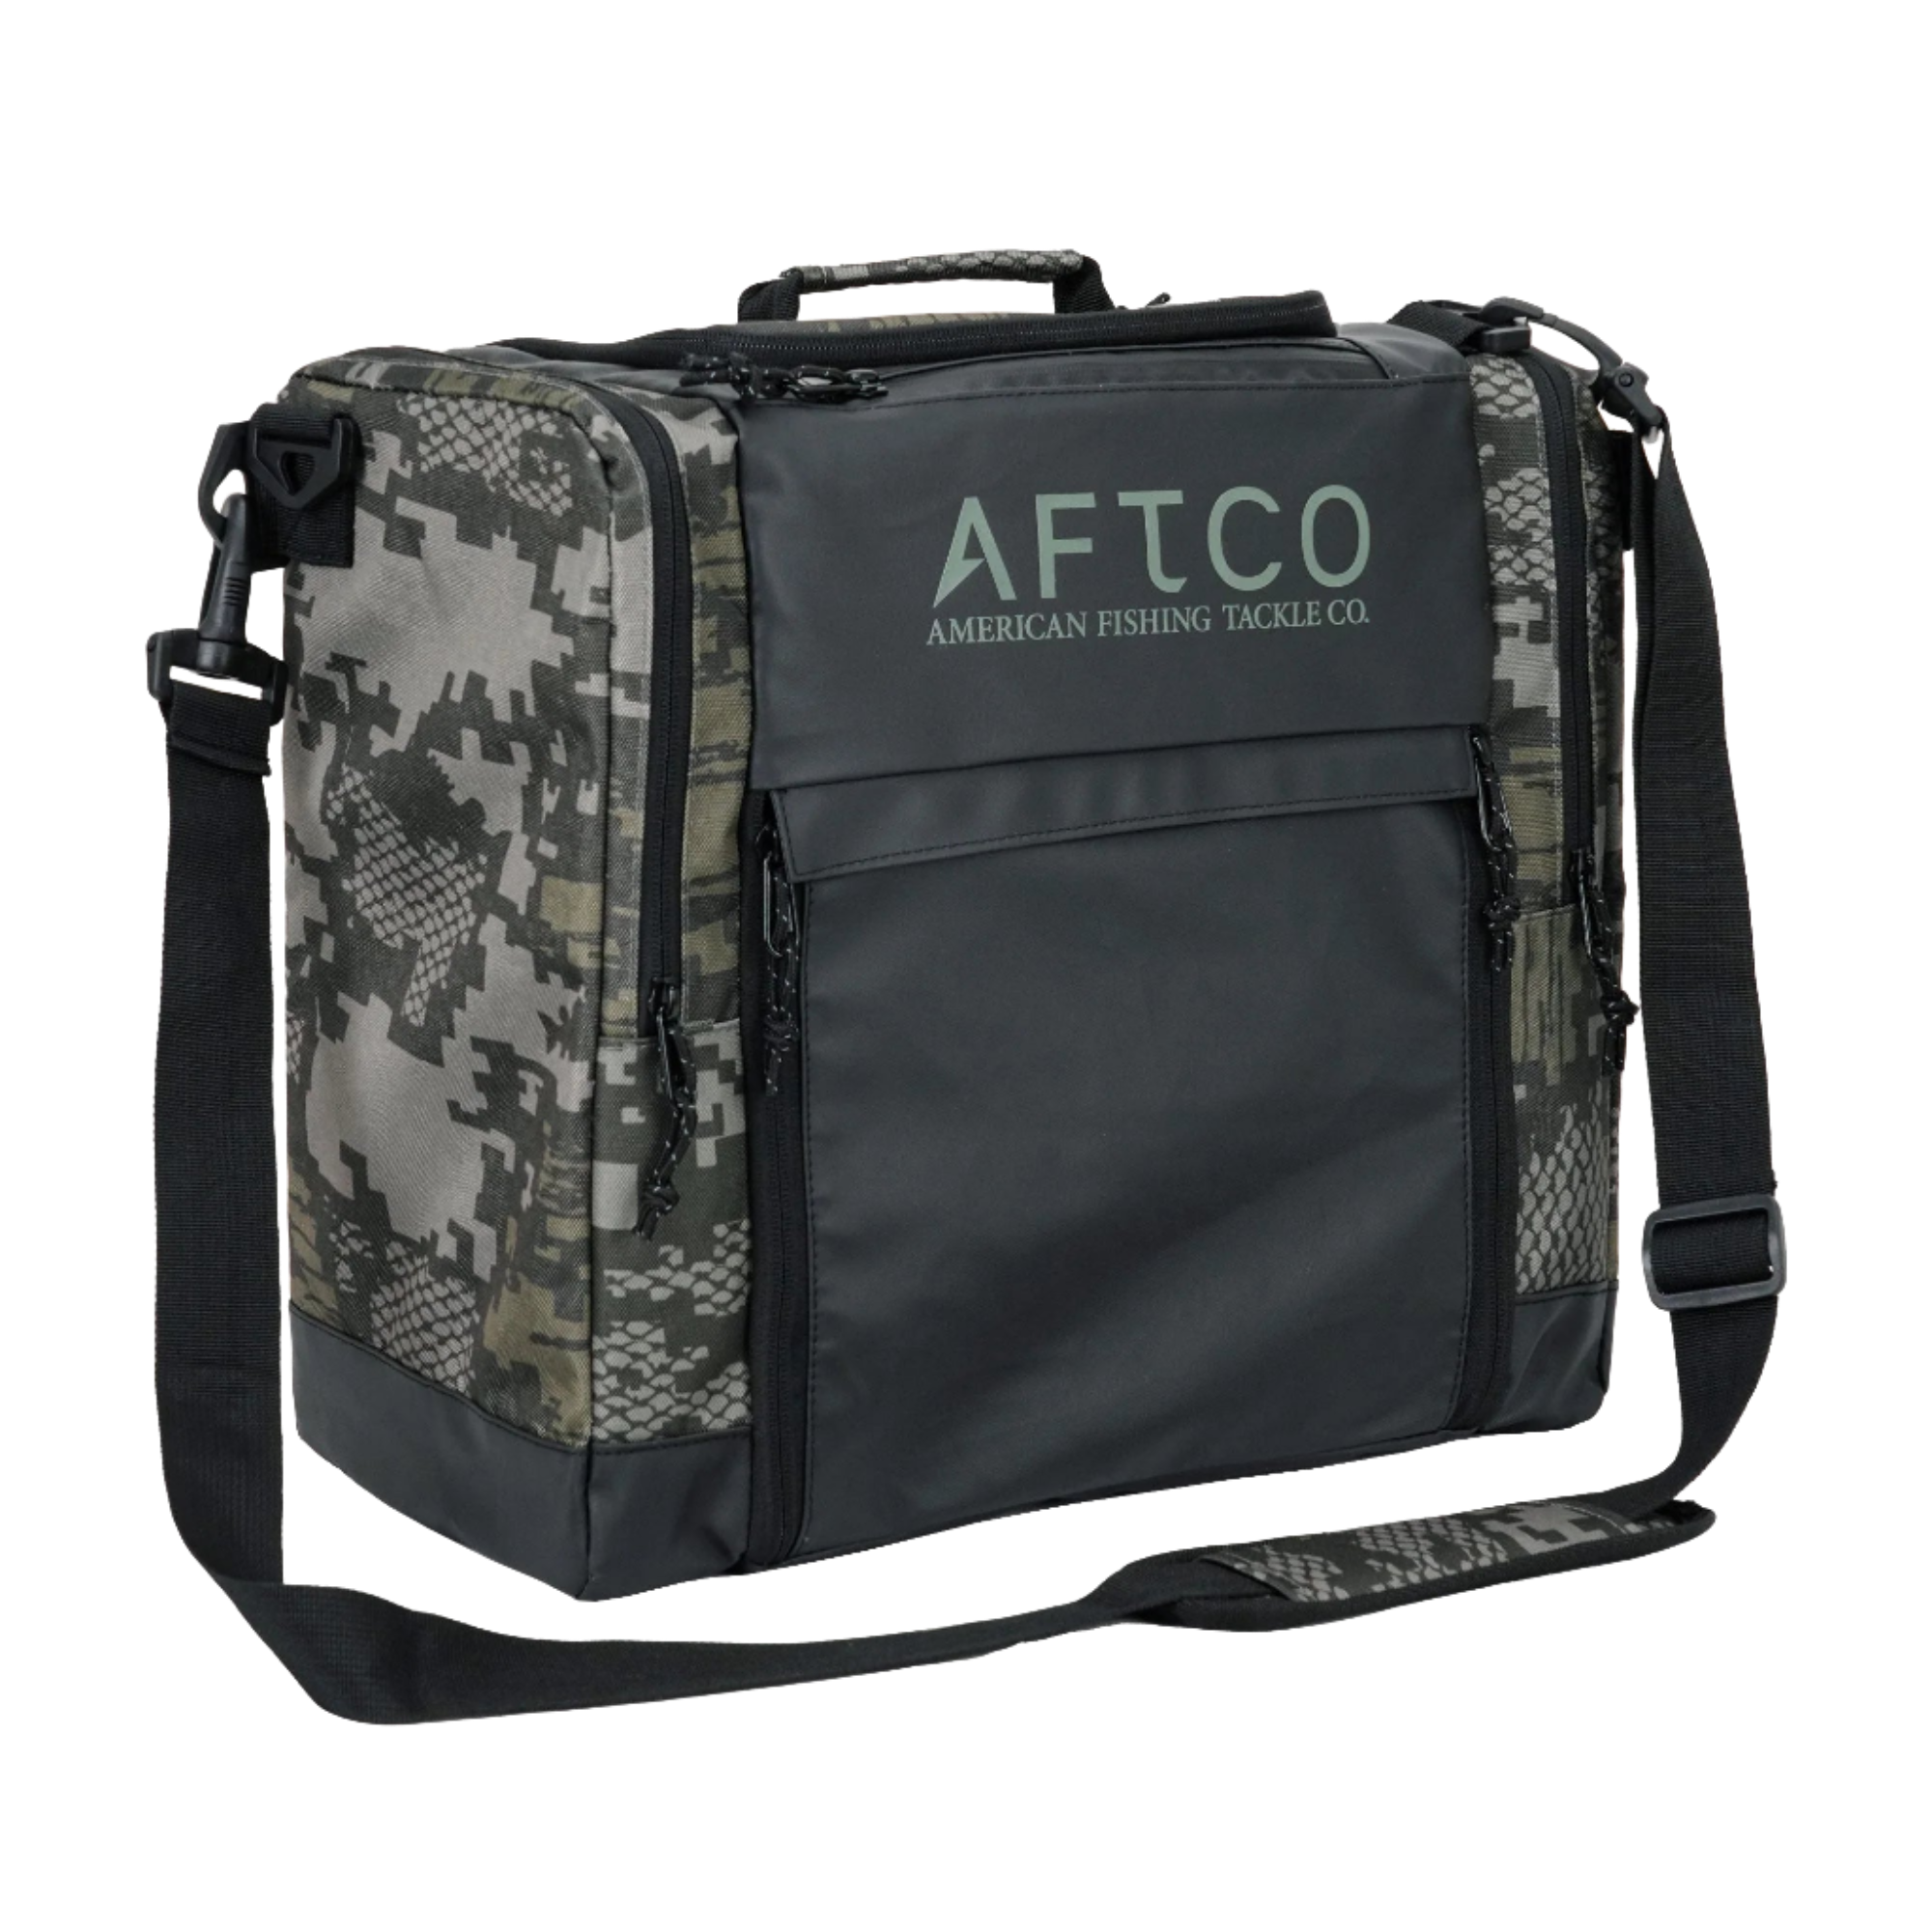 AFTCO Tackle Bag